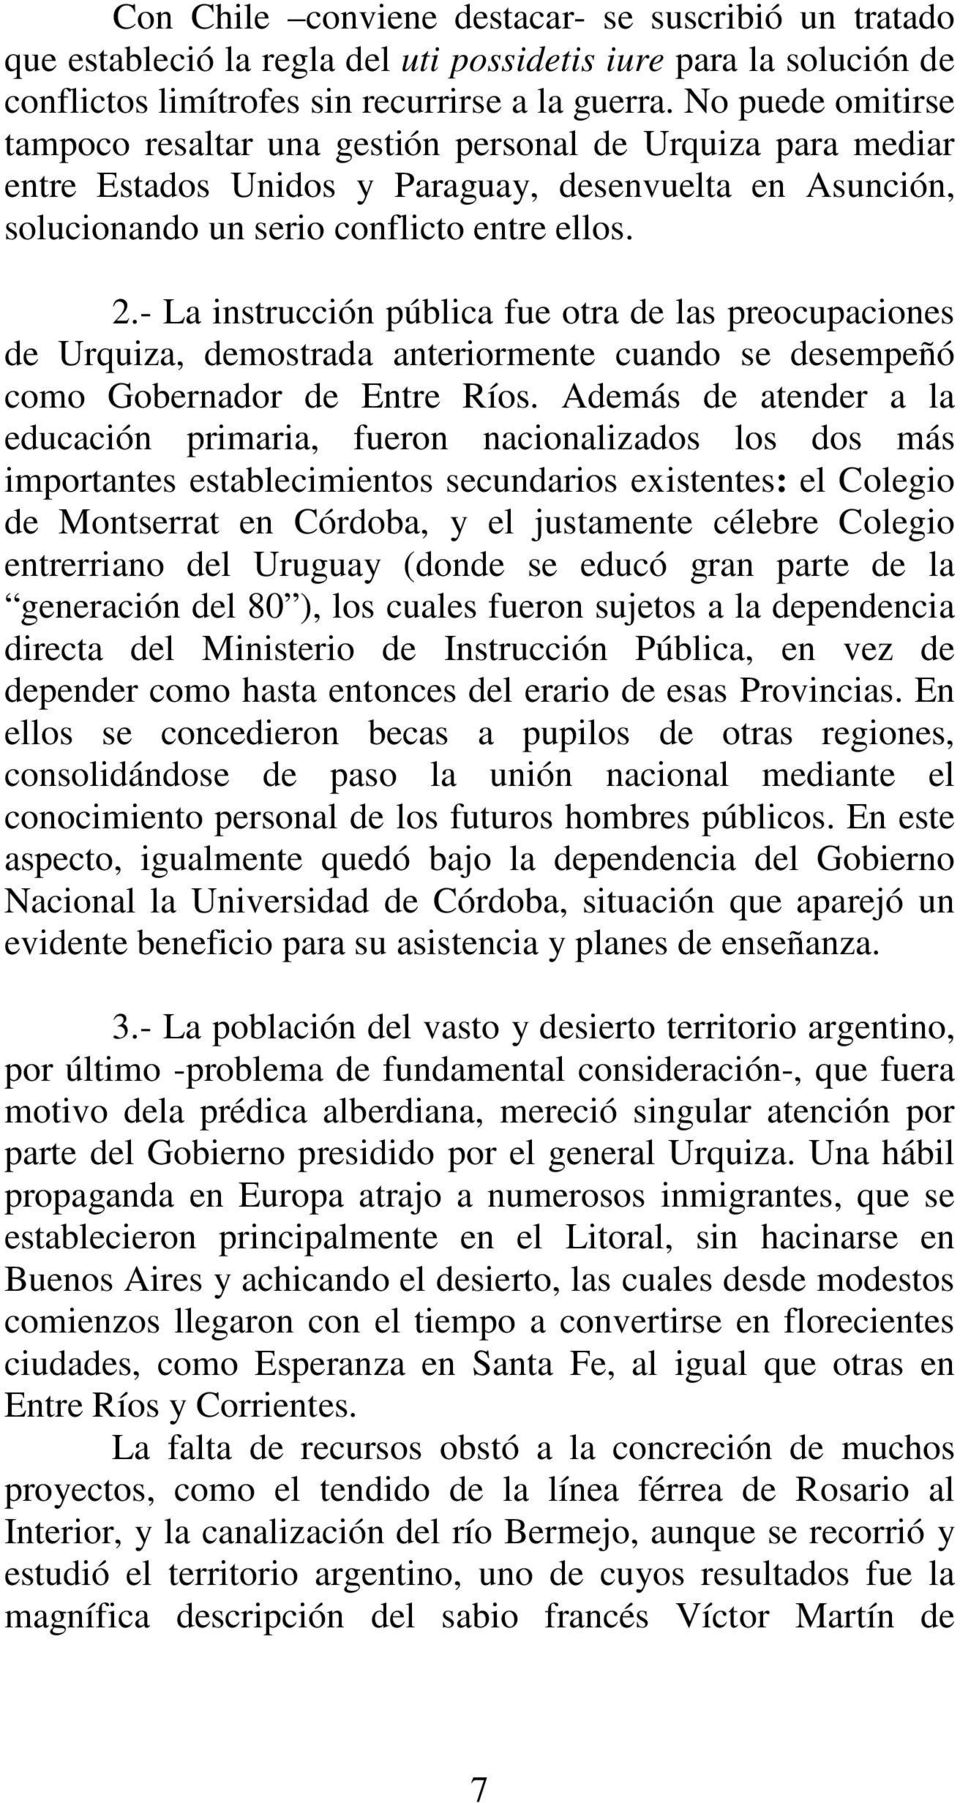 - La instrucción pública fue otra de las preocupaciones de Urquiza, demostrada anteriormente cuando se desempeñó como Gobernador de Entre Ríos.